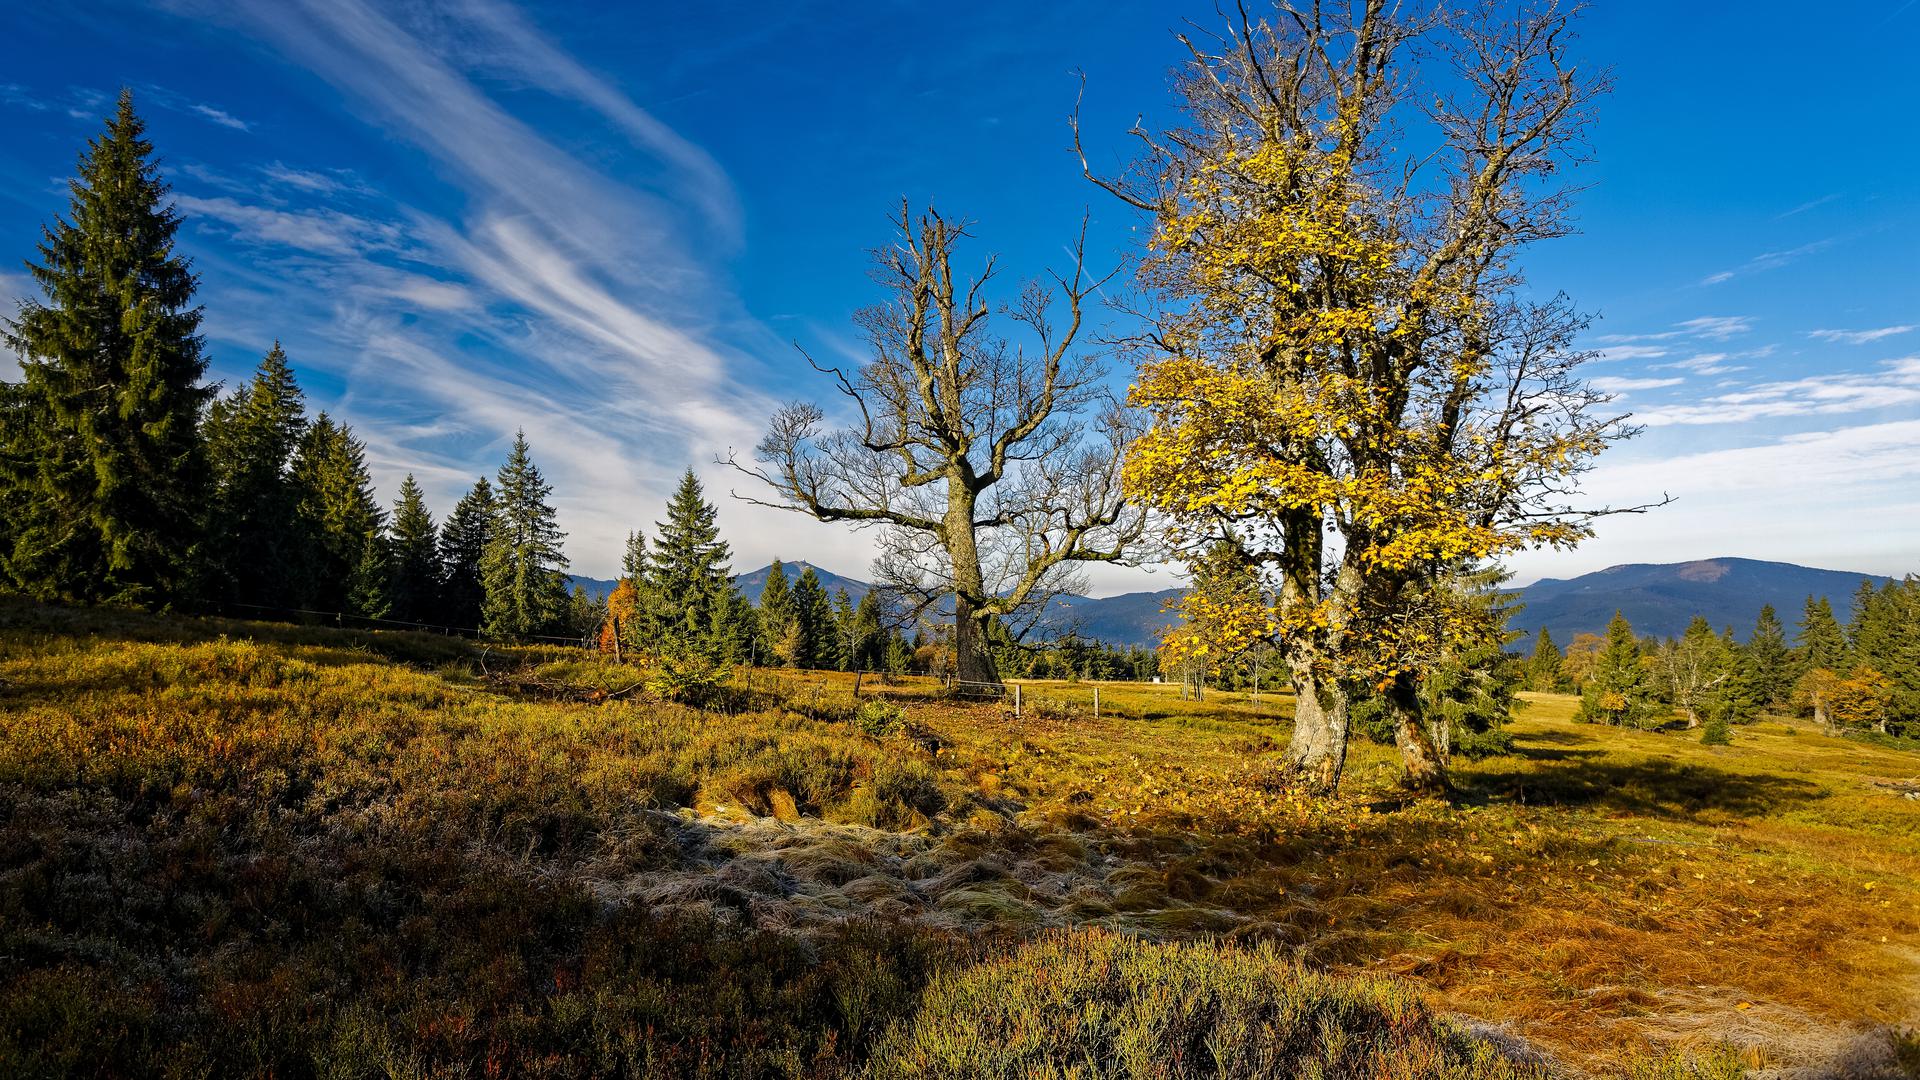 Jubiläum im Bayerischen Wald: Vor 50 Jahren wurde der erste Nationalpark auf deutschem Boden gegründet. Zusammen mit dem angrenzenden Nationalpark in Böhmen bildet er das größte zusammenhängende Waldgebiet im Herzen Europas. 